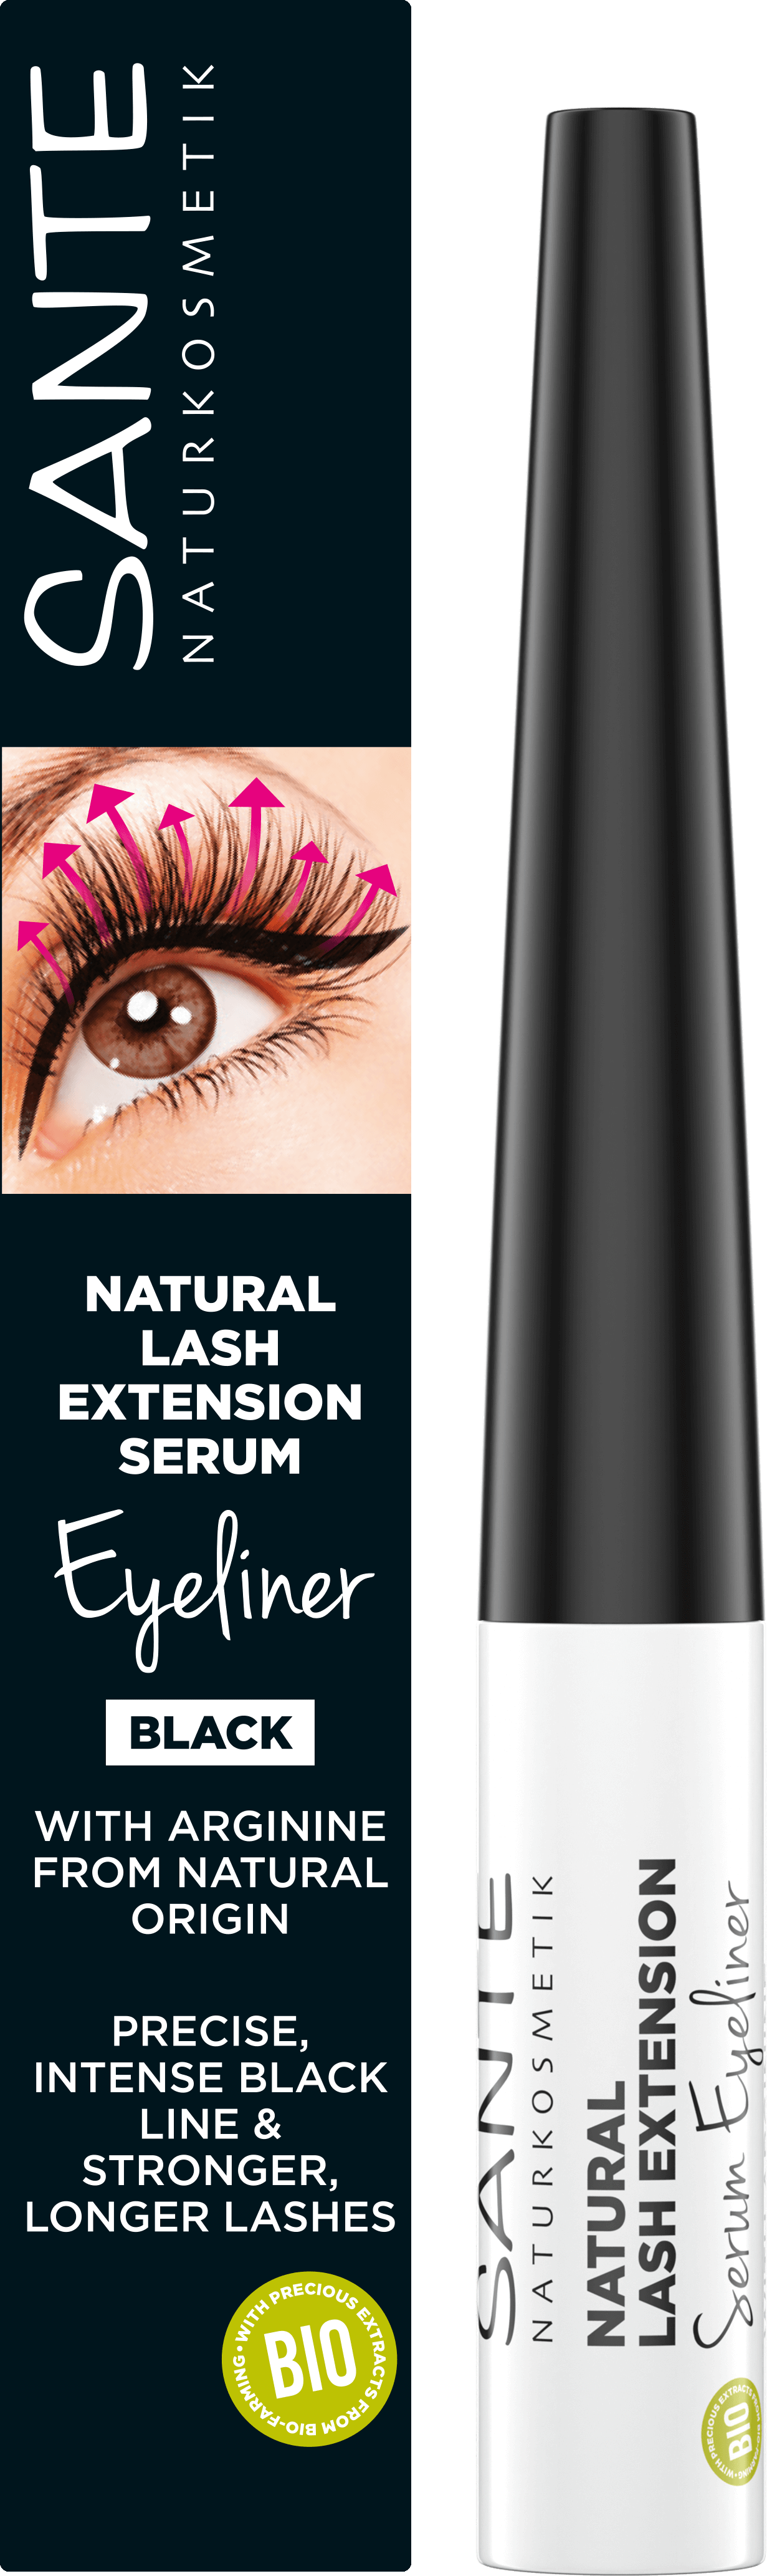 SANTE Extension Natural Naturkosmetik Lash Eyeliner Serum |